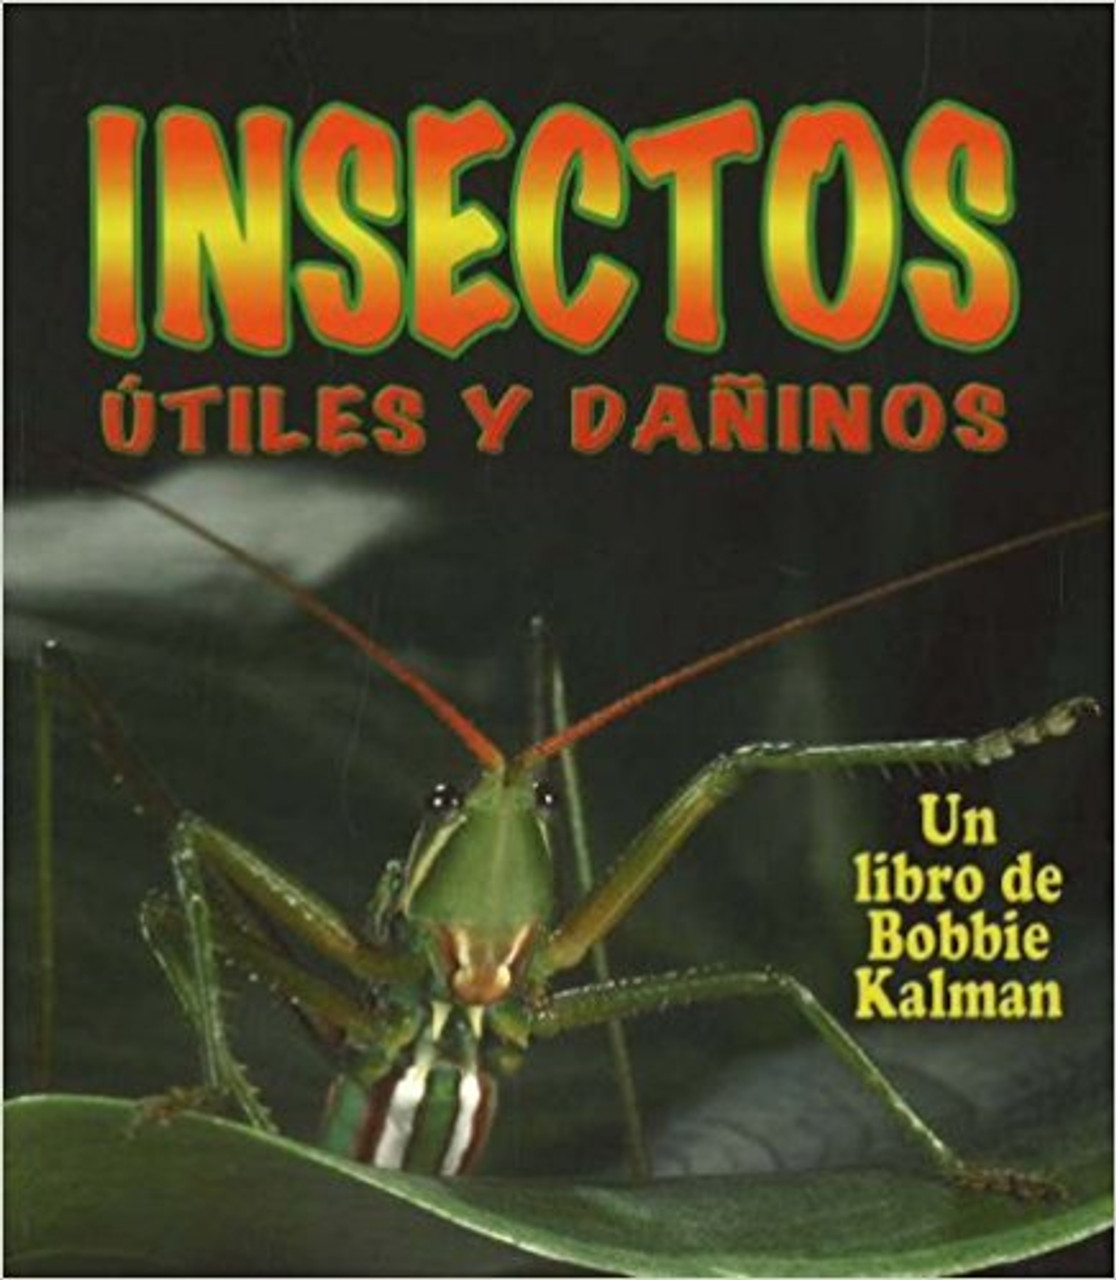 Insectos Utiles u Daninos by Molly Aloian